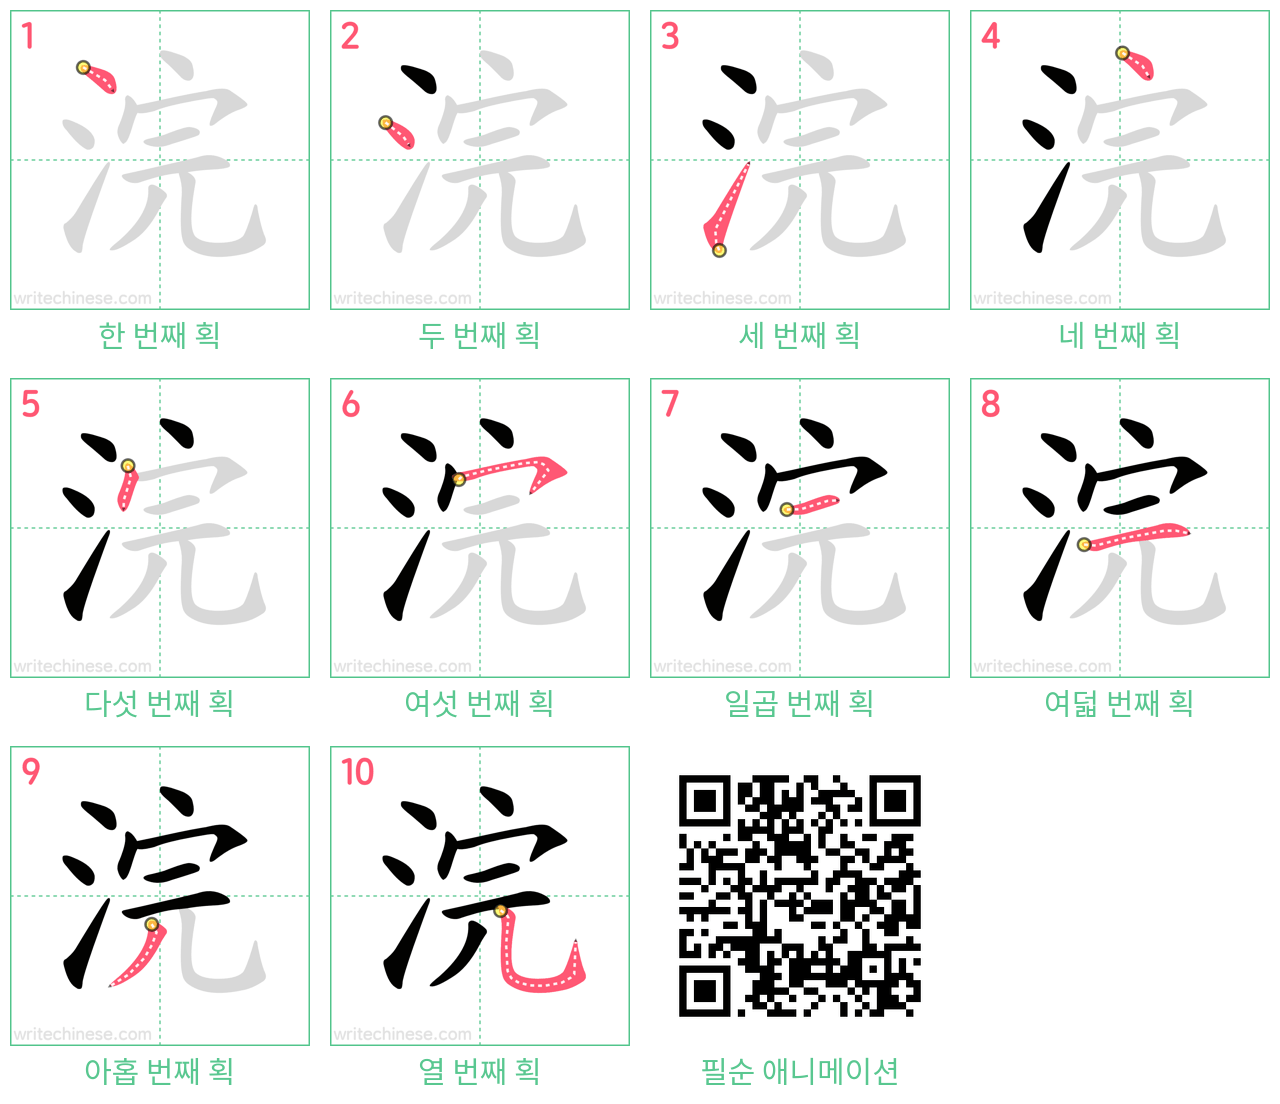 浣 step-by-step stroke order diagrams